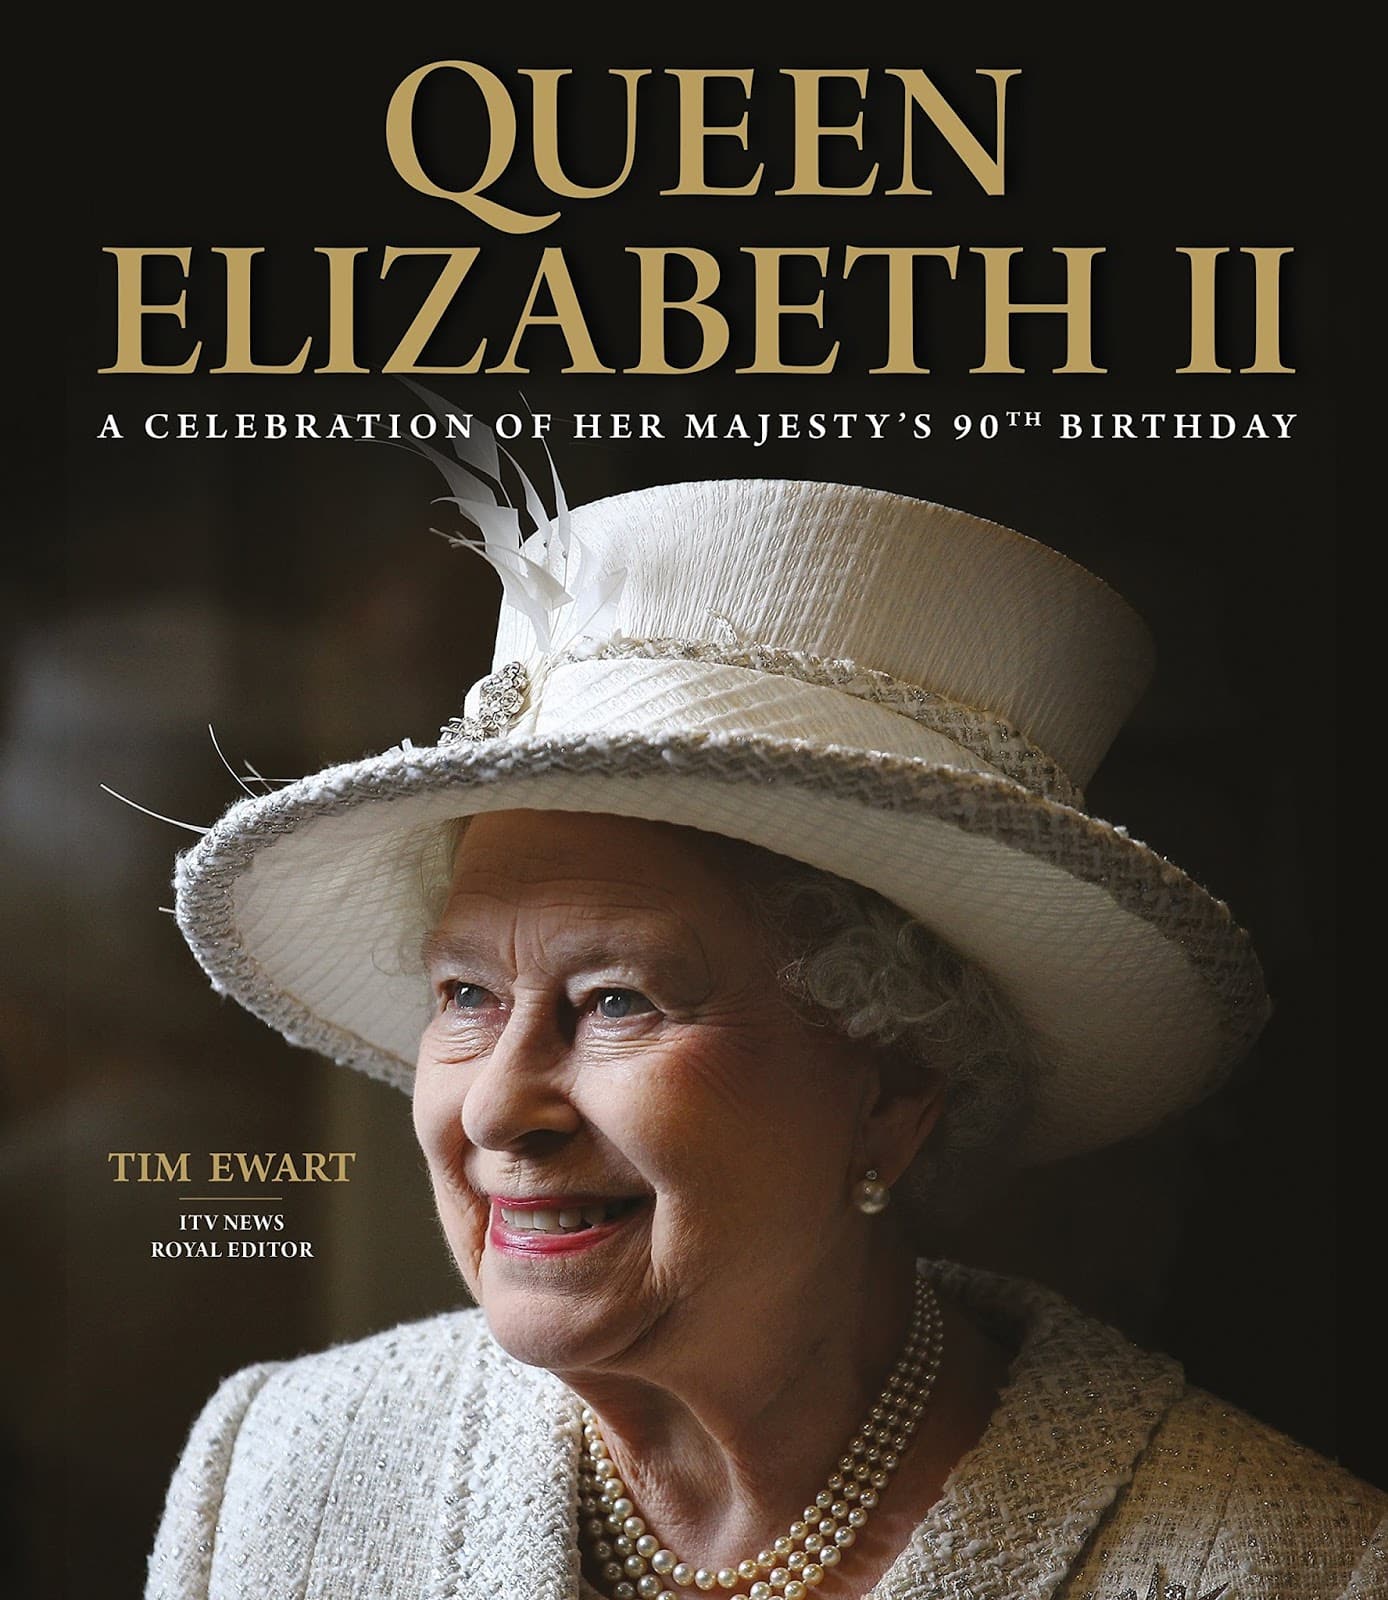 Celebrate Queen Elizabeth II